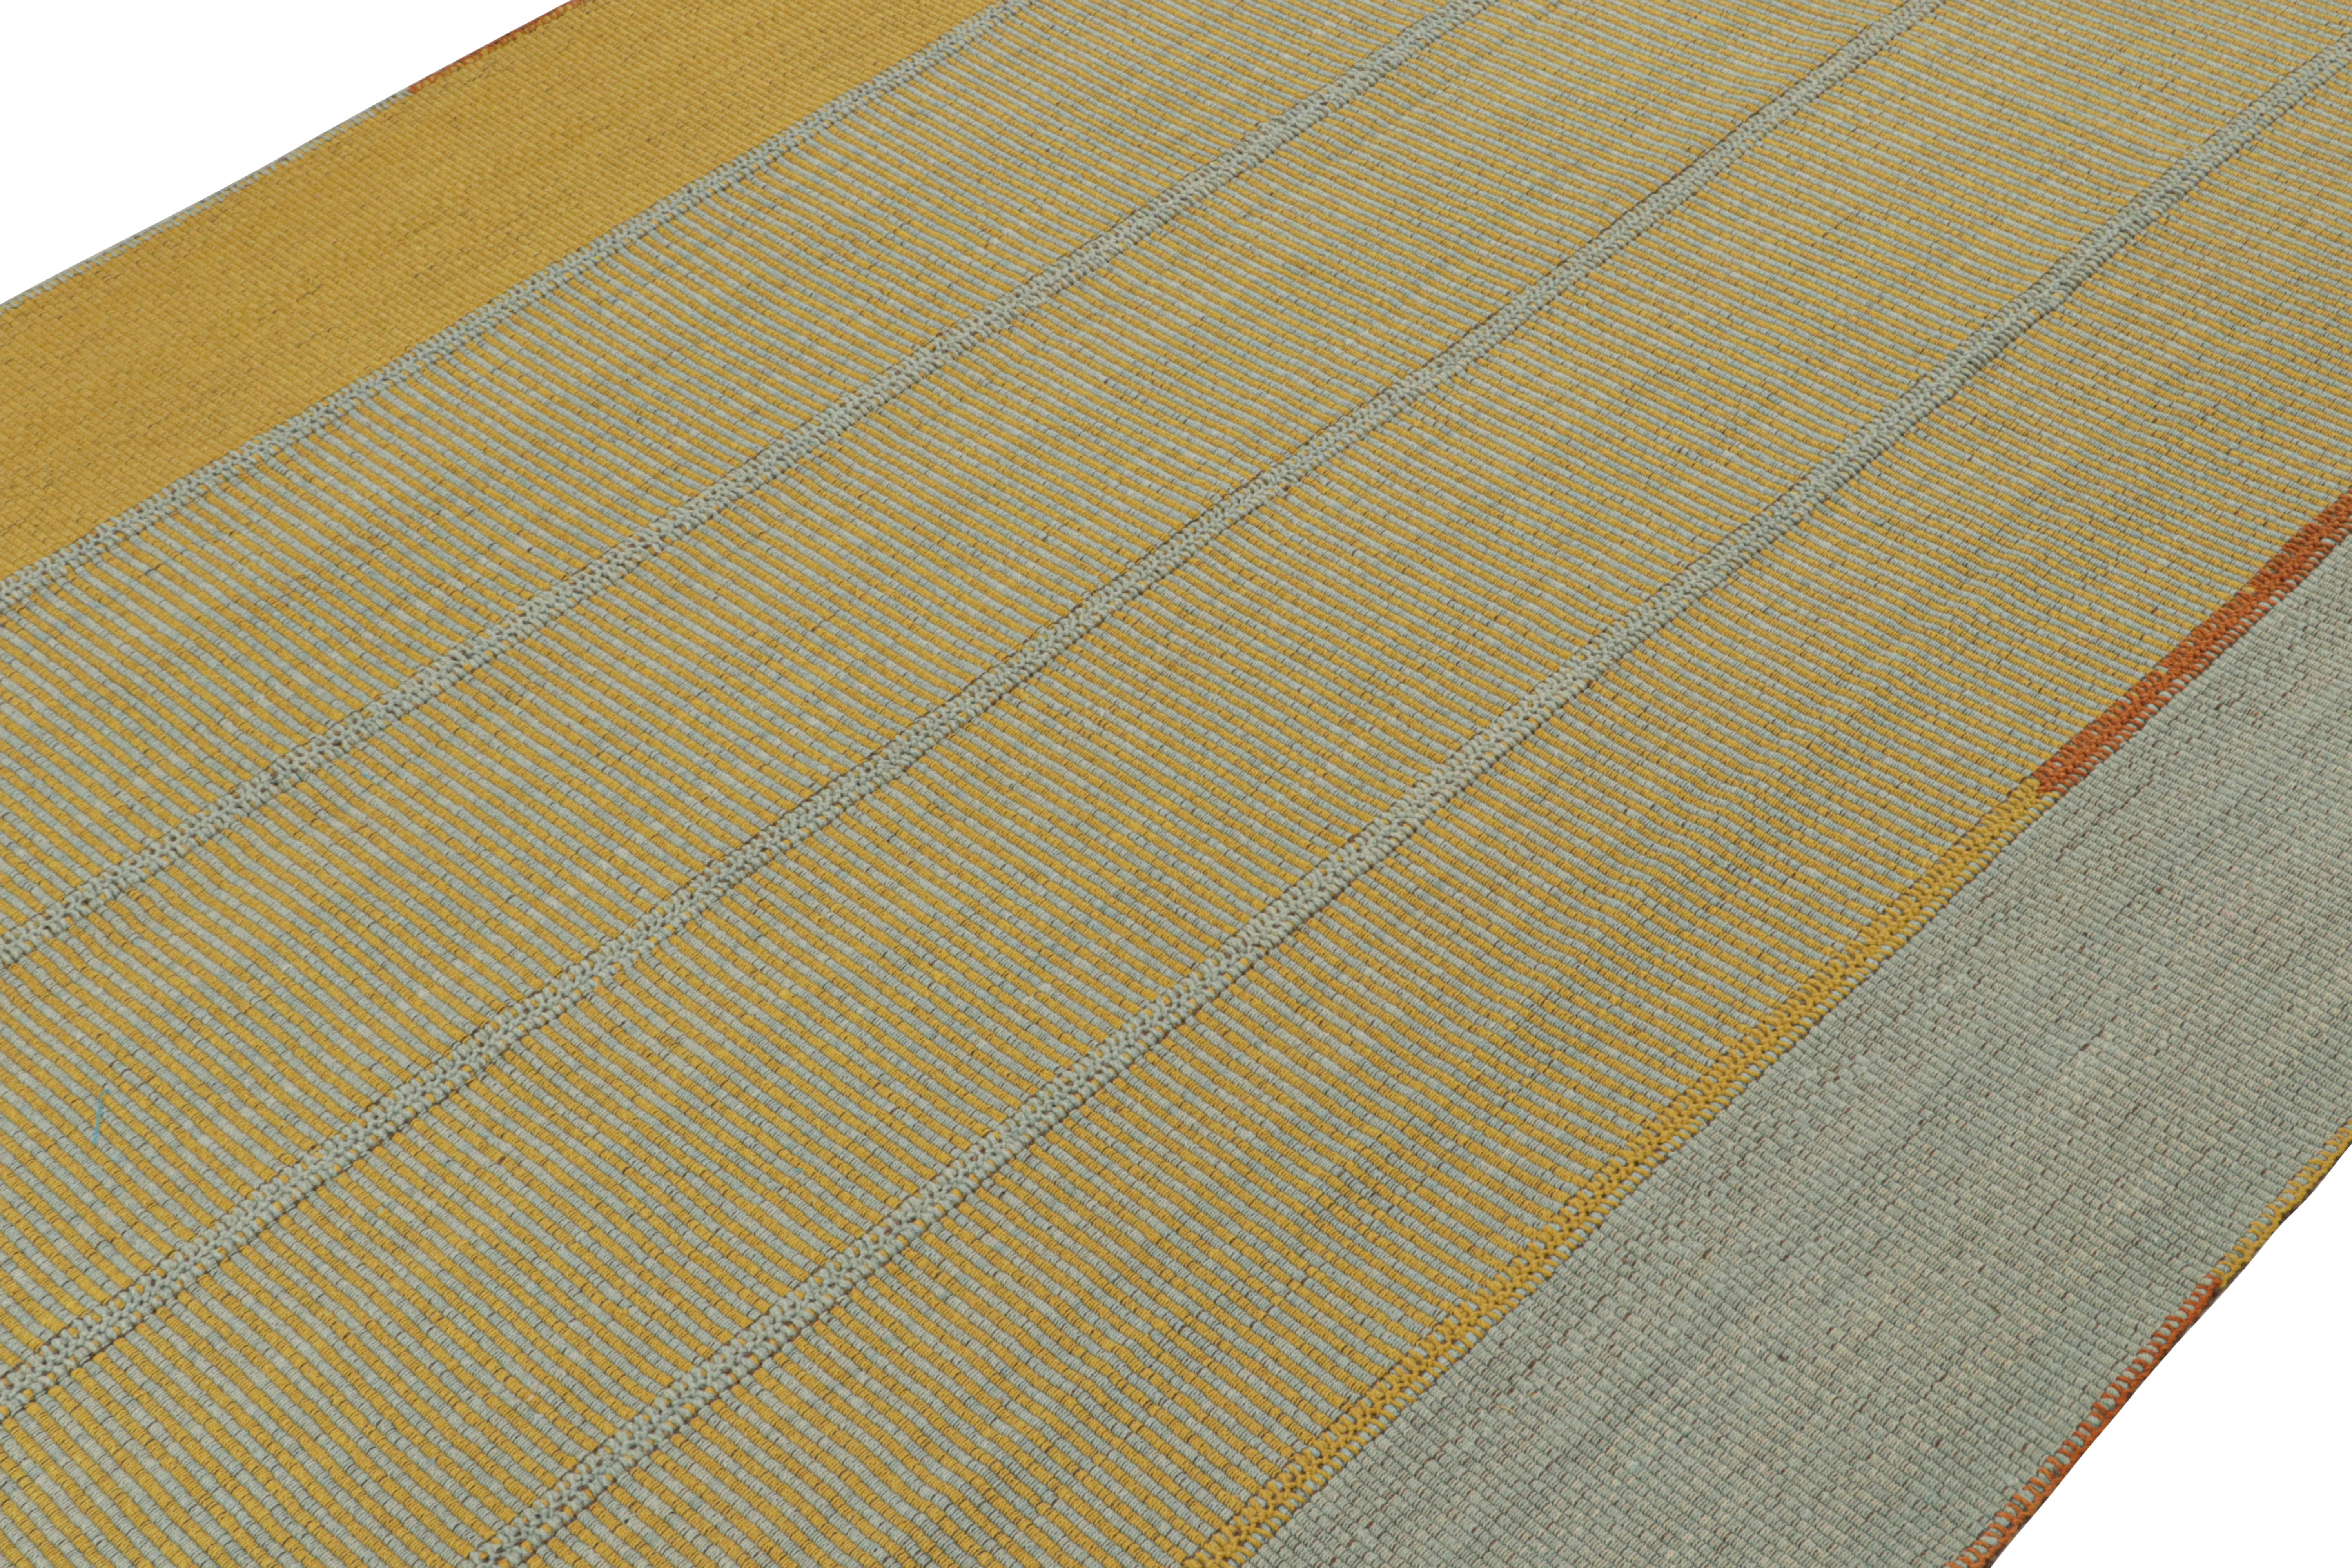 Tissé à la main en laine, ce kilim 9×12 fait partie d'une nouvelle ligne audacieuse de tissages plats contemporains de Rug & Kilim.

Sur le Design :

Connotant une approche moderne du tissage de panneaux classique, notre dernier 